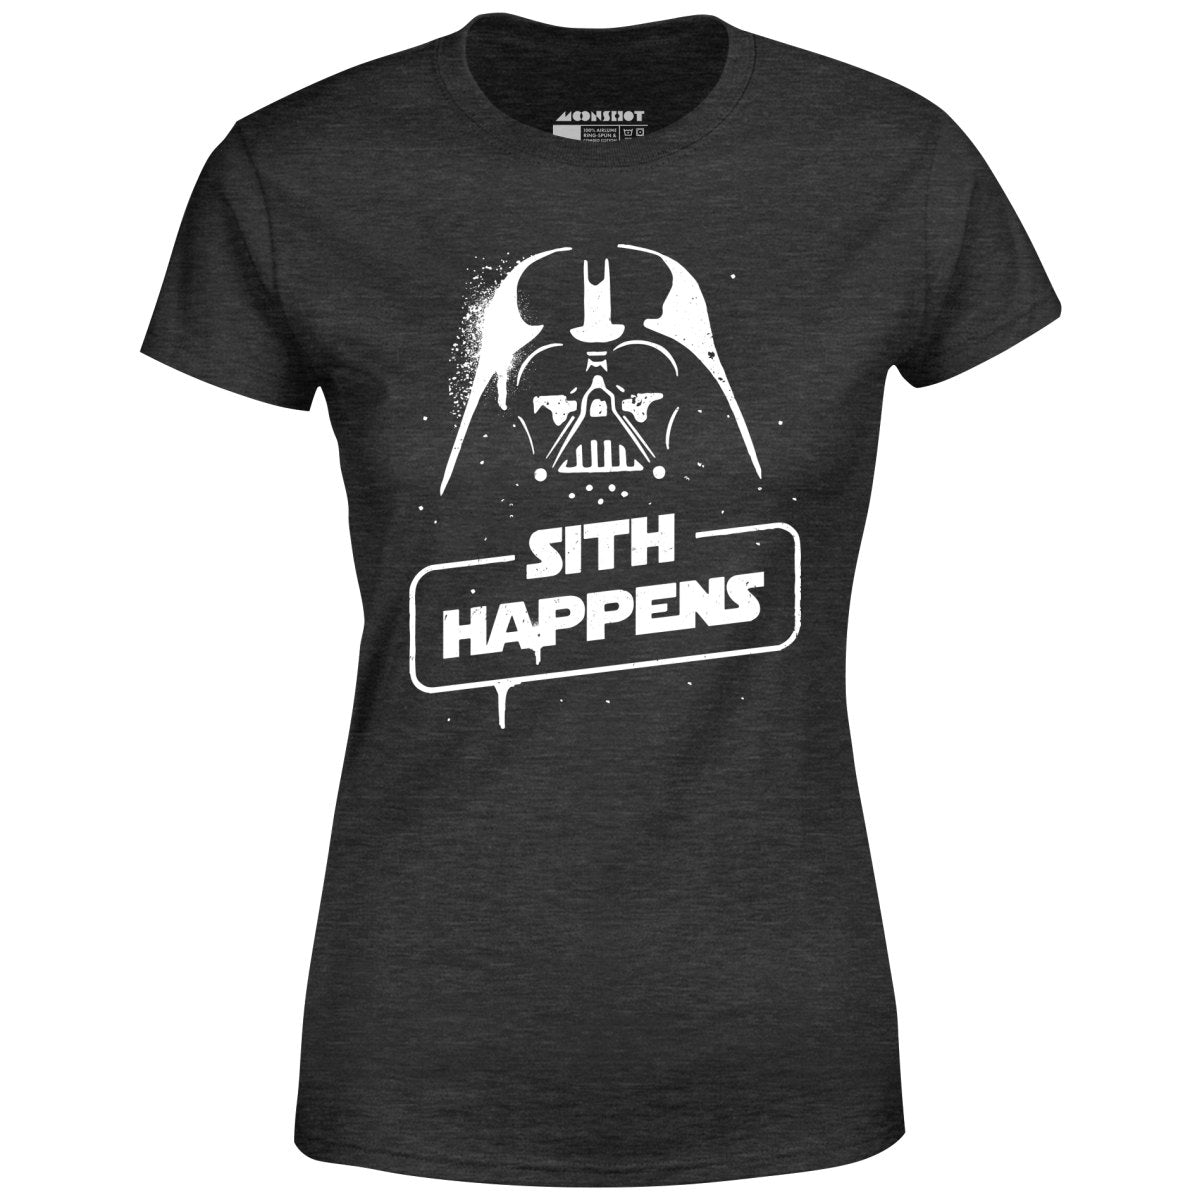 Sith Happens - Women's T-Shirt